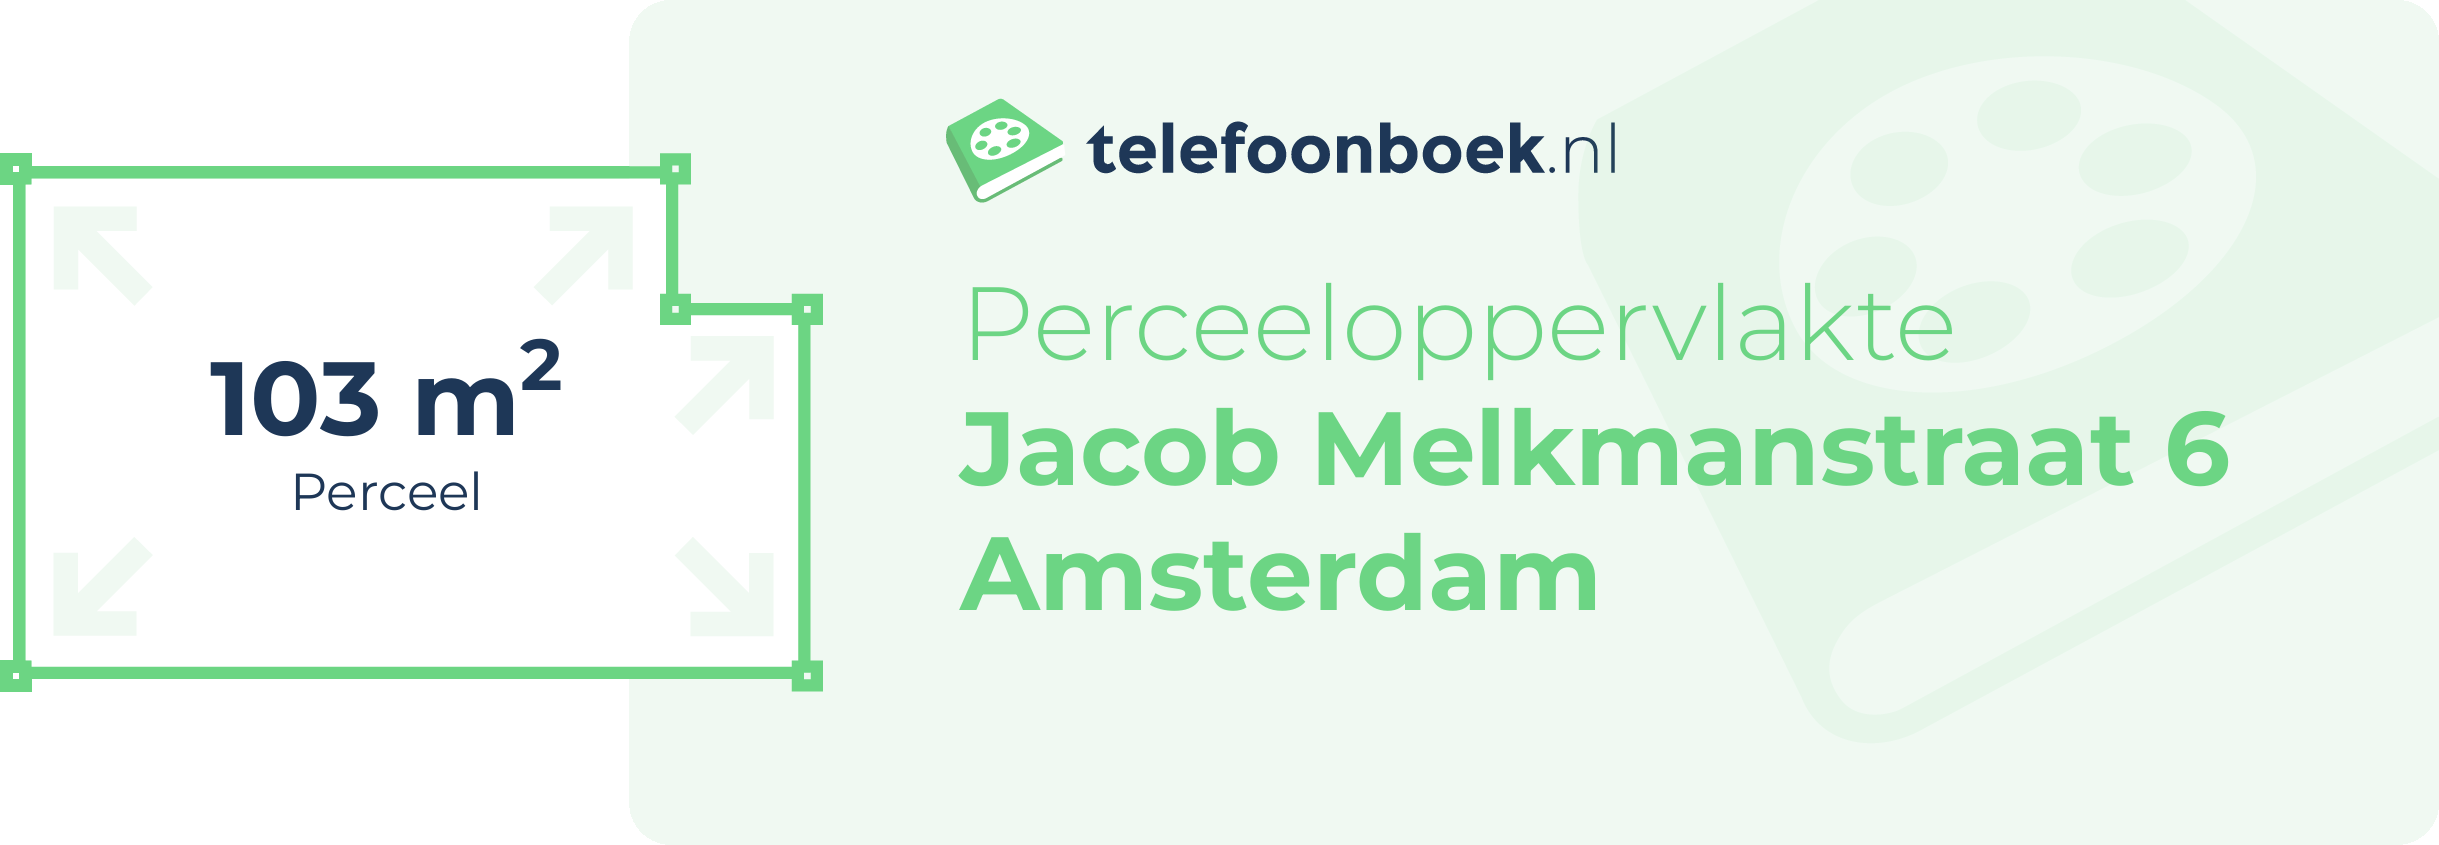 Perceeloppervlakte Jacob Melkmanstraat 6 Amsterdam